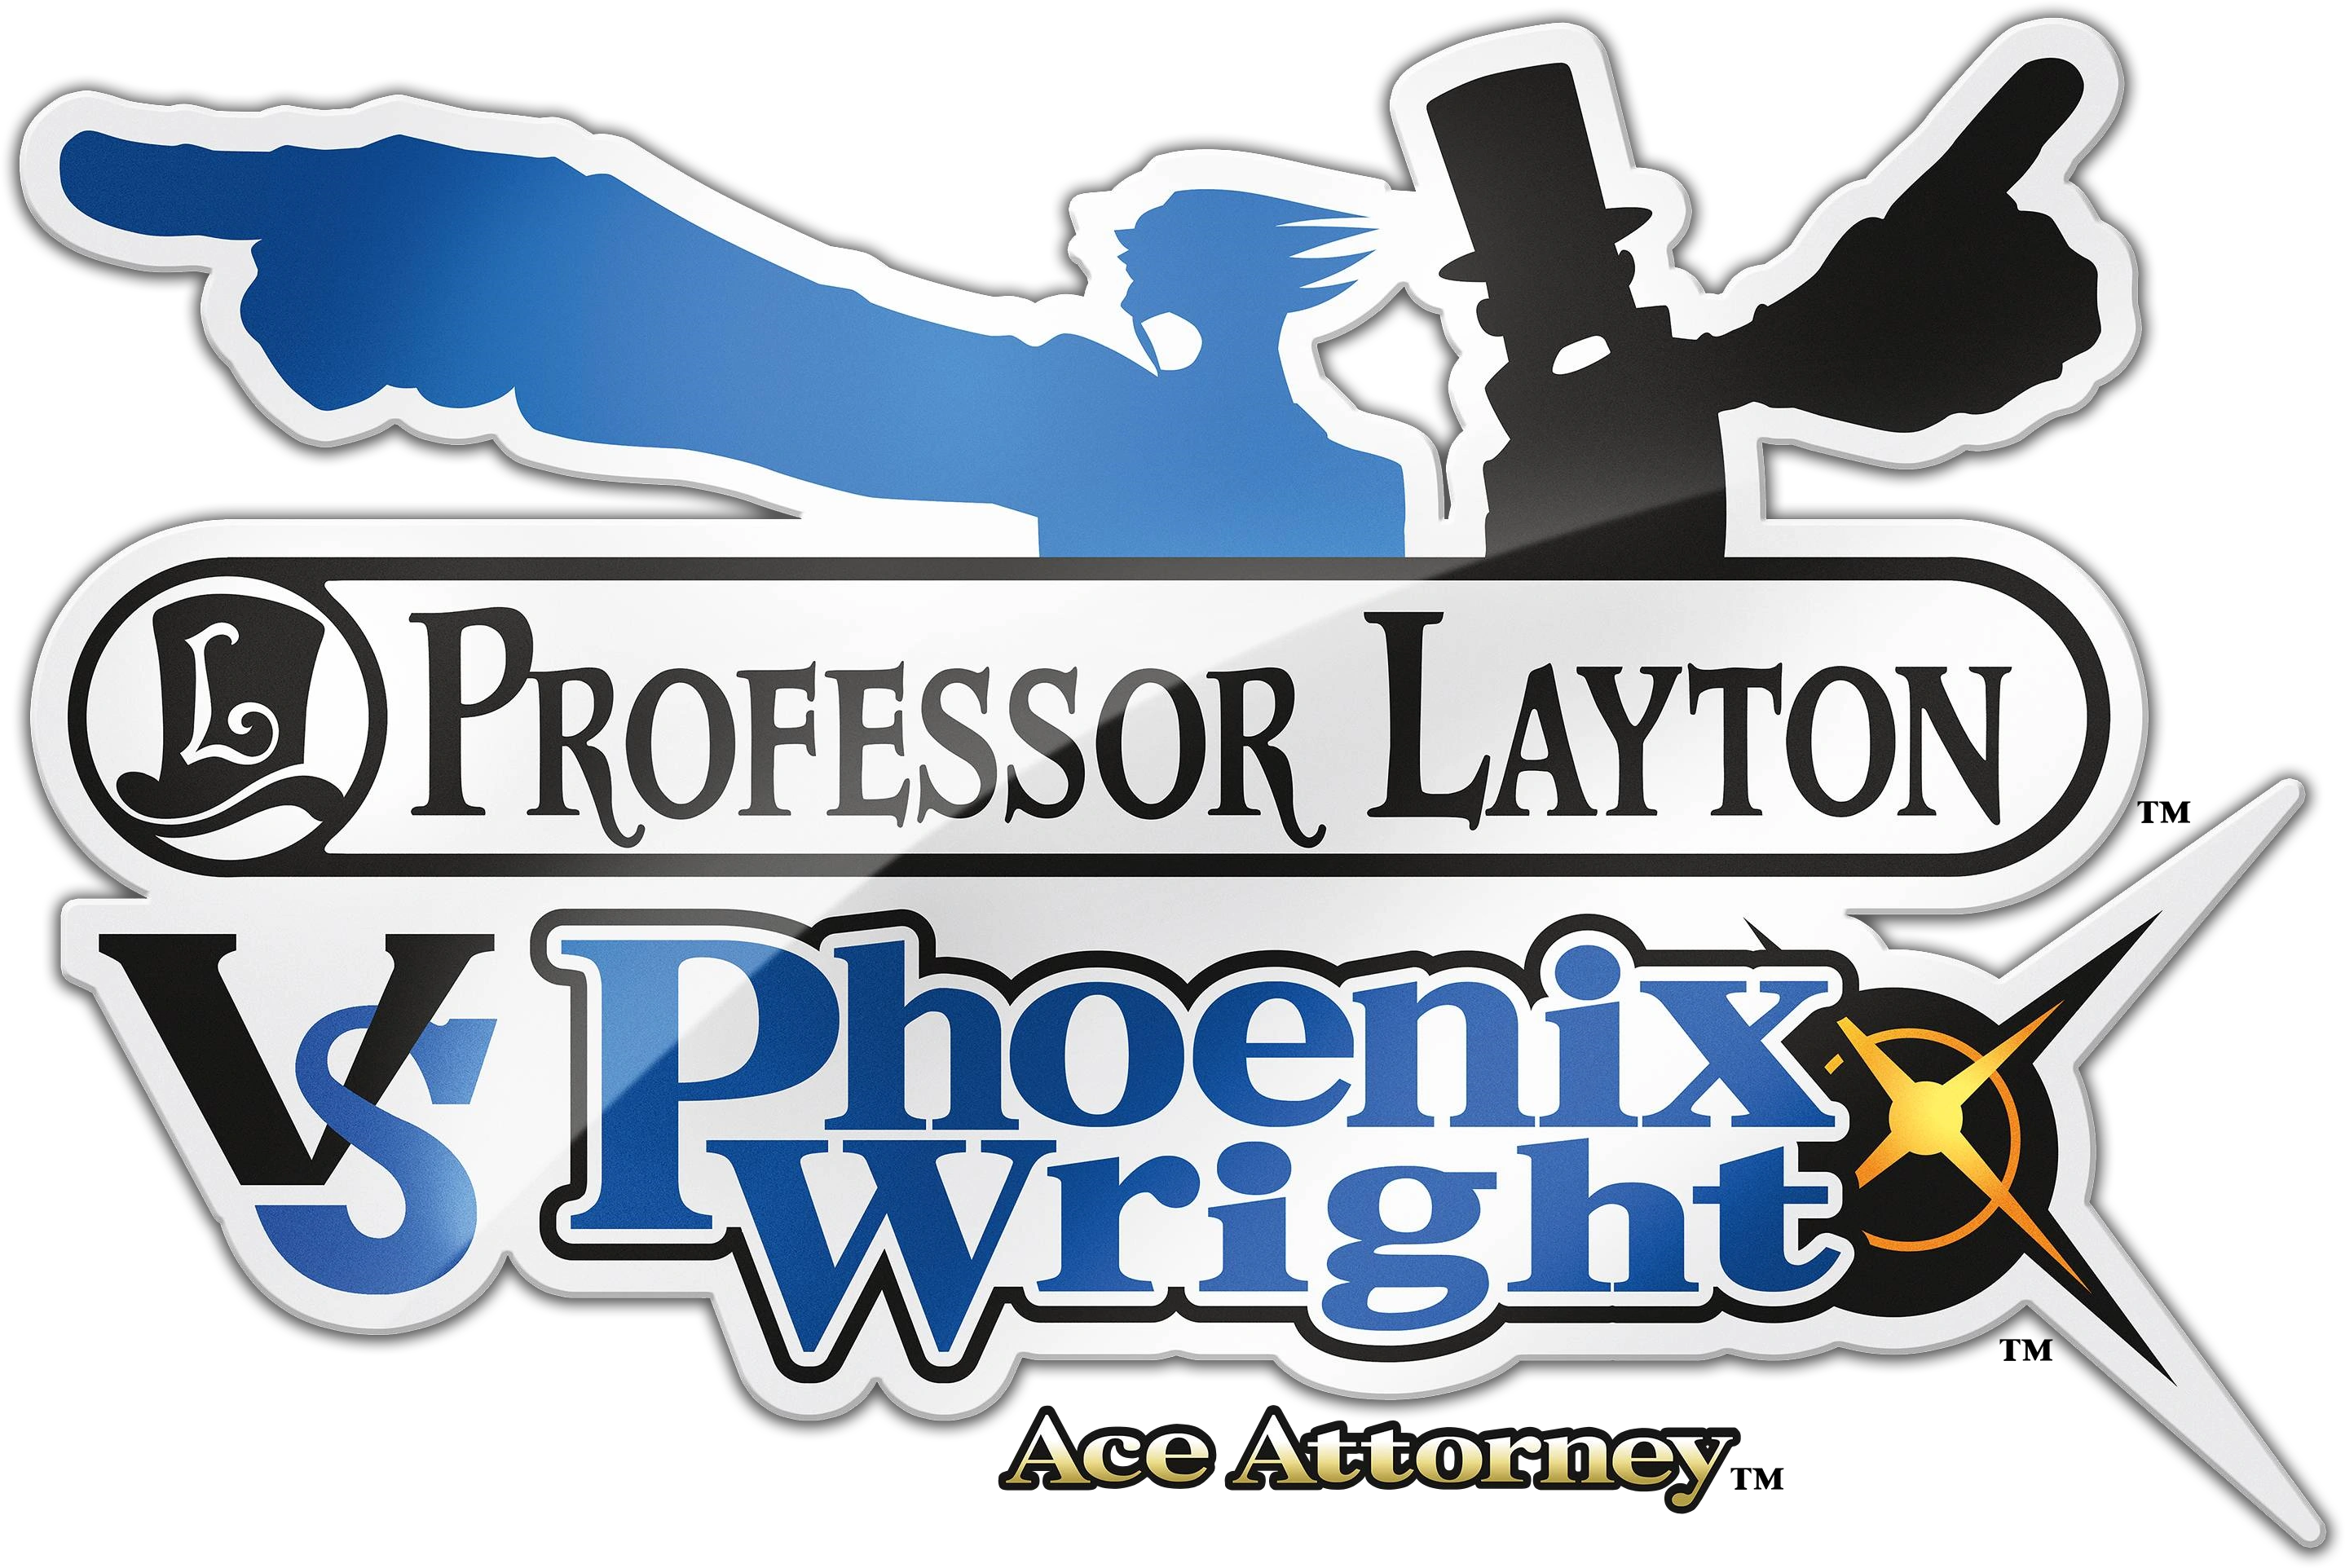 Professor Layton vs. Phoenix Wright: Ace Attorney, E3 Trailer